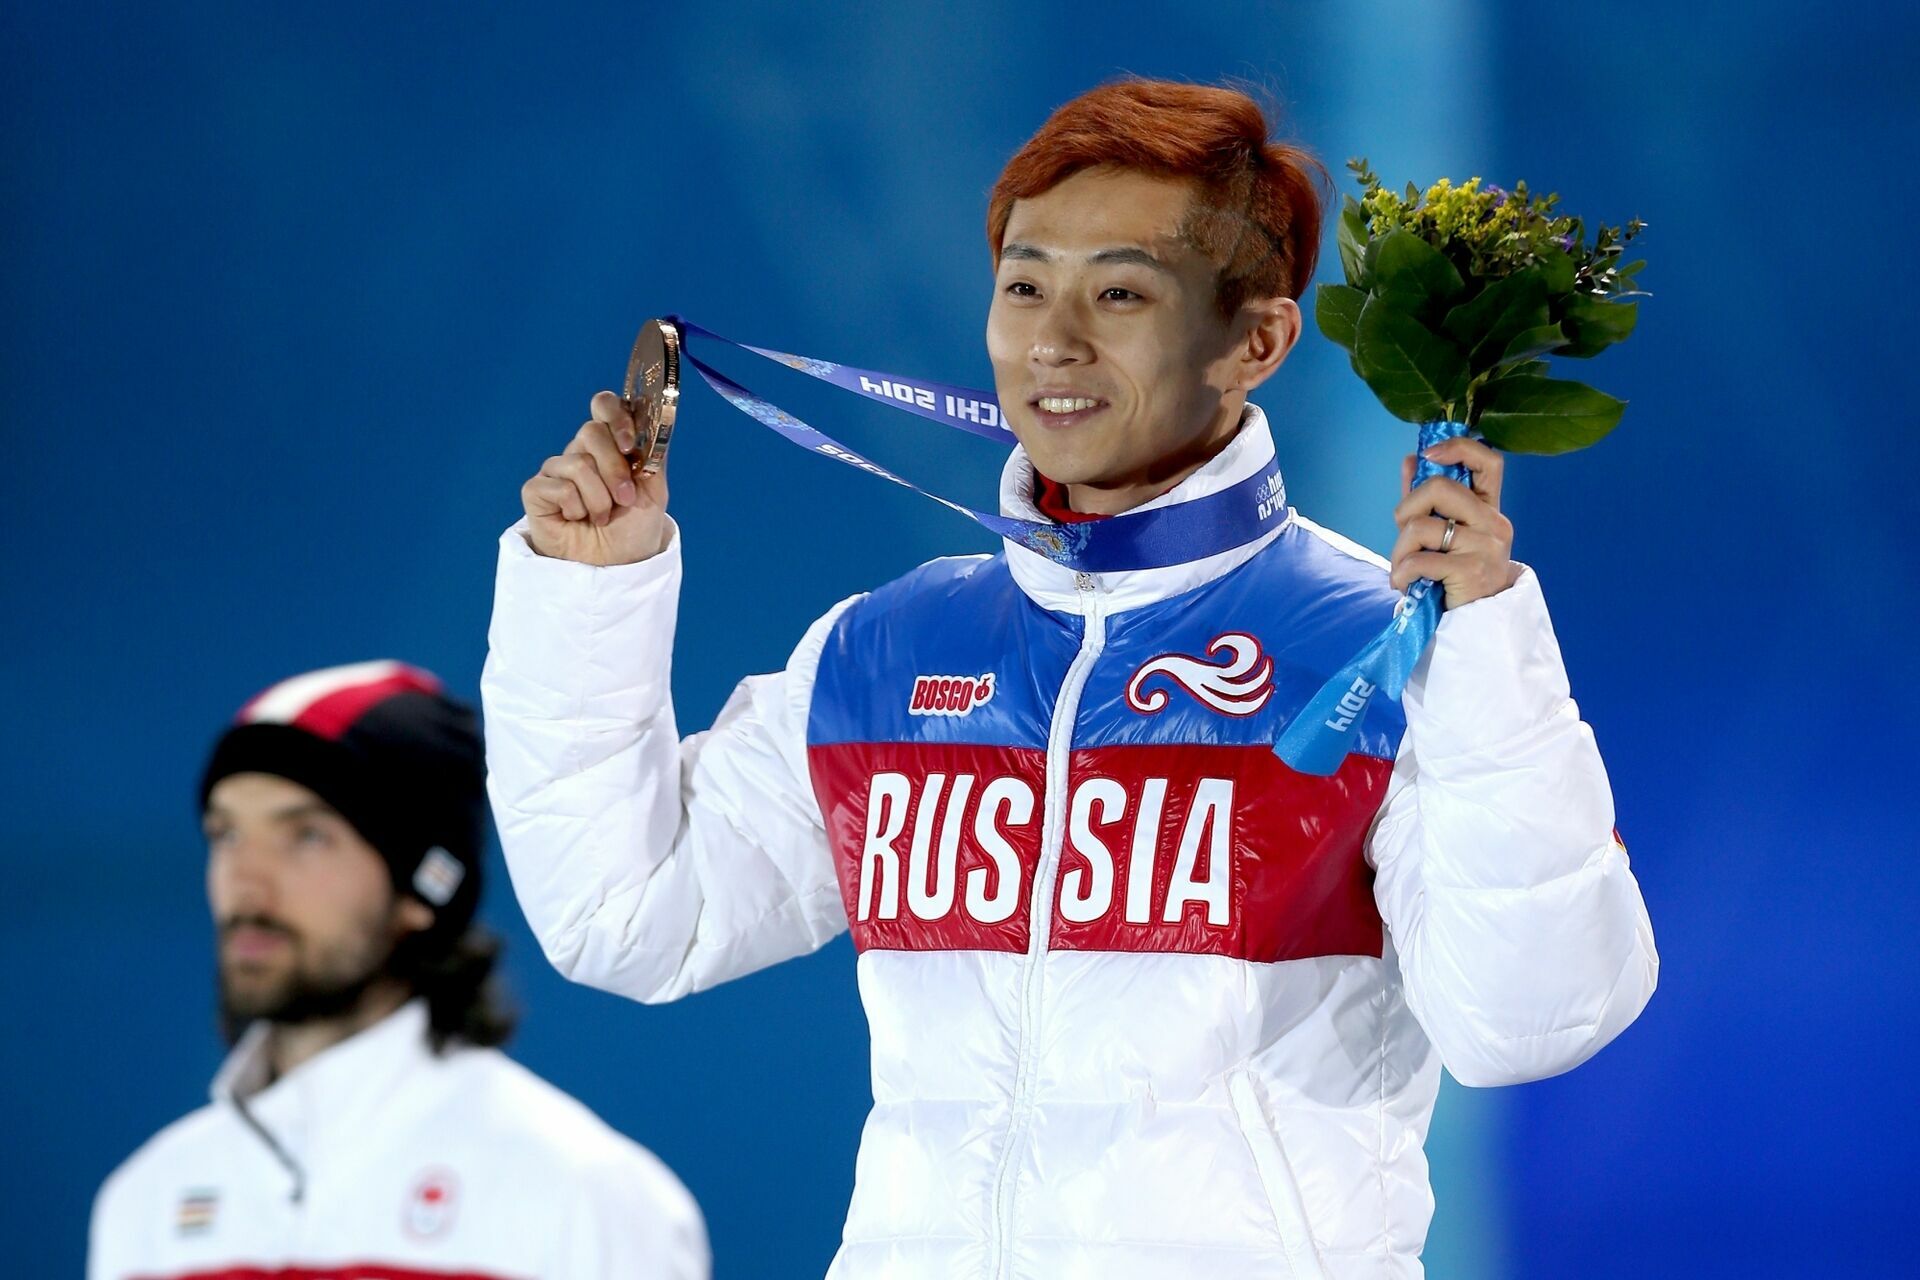 Шестикратный олимпийский чемпион – конькобежец Виктор Ан завершил спортивную карьеру